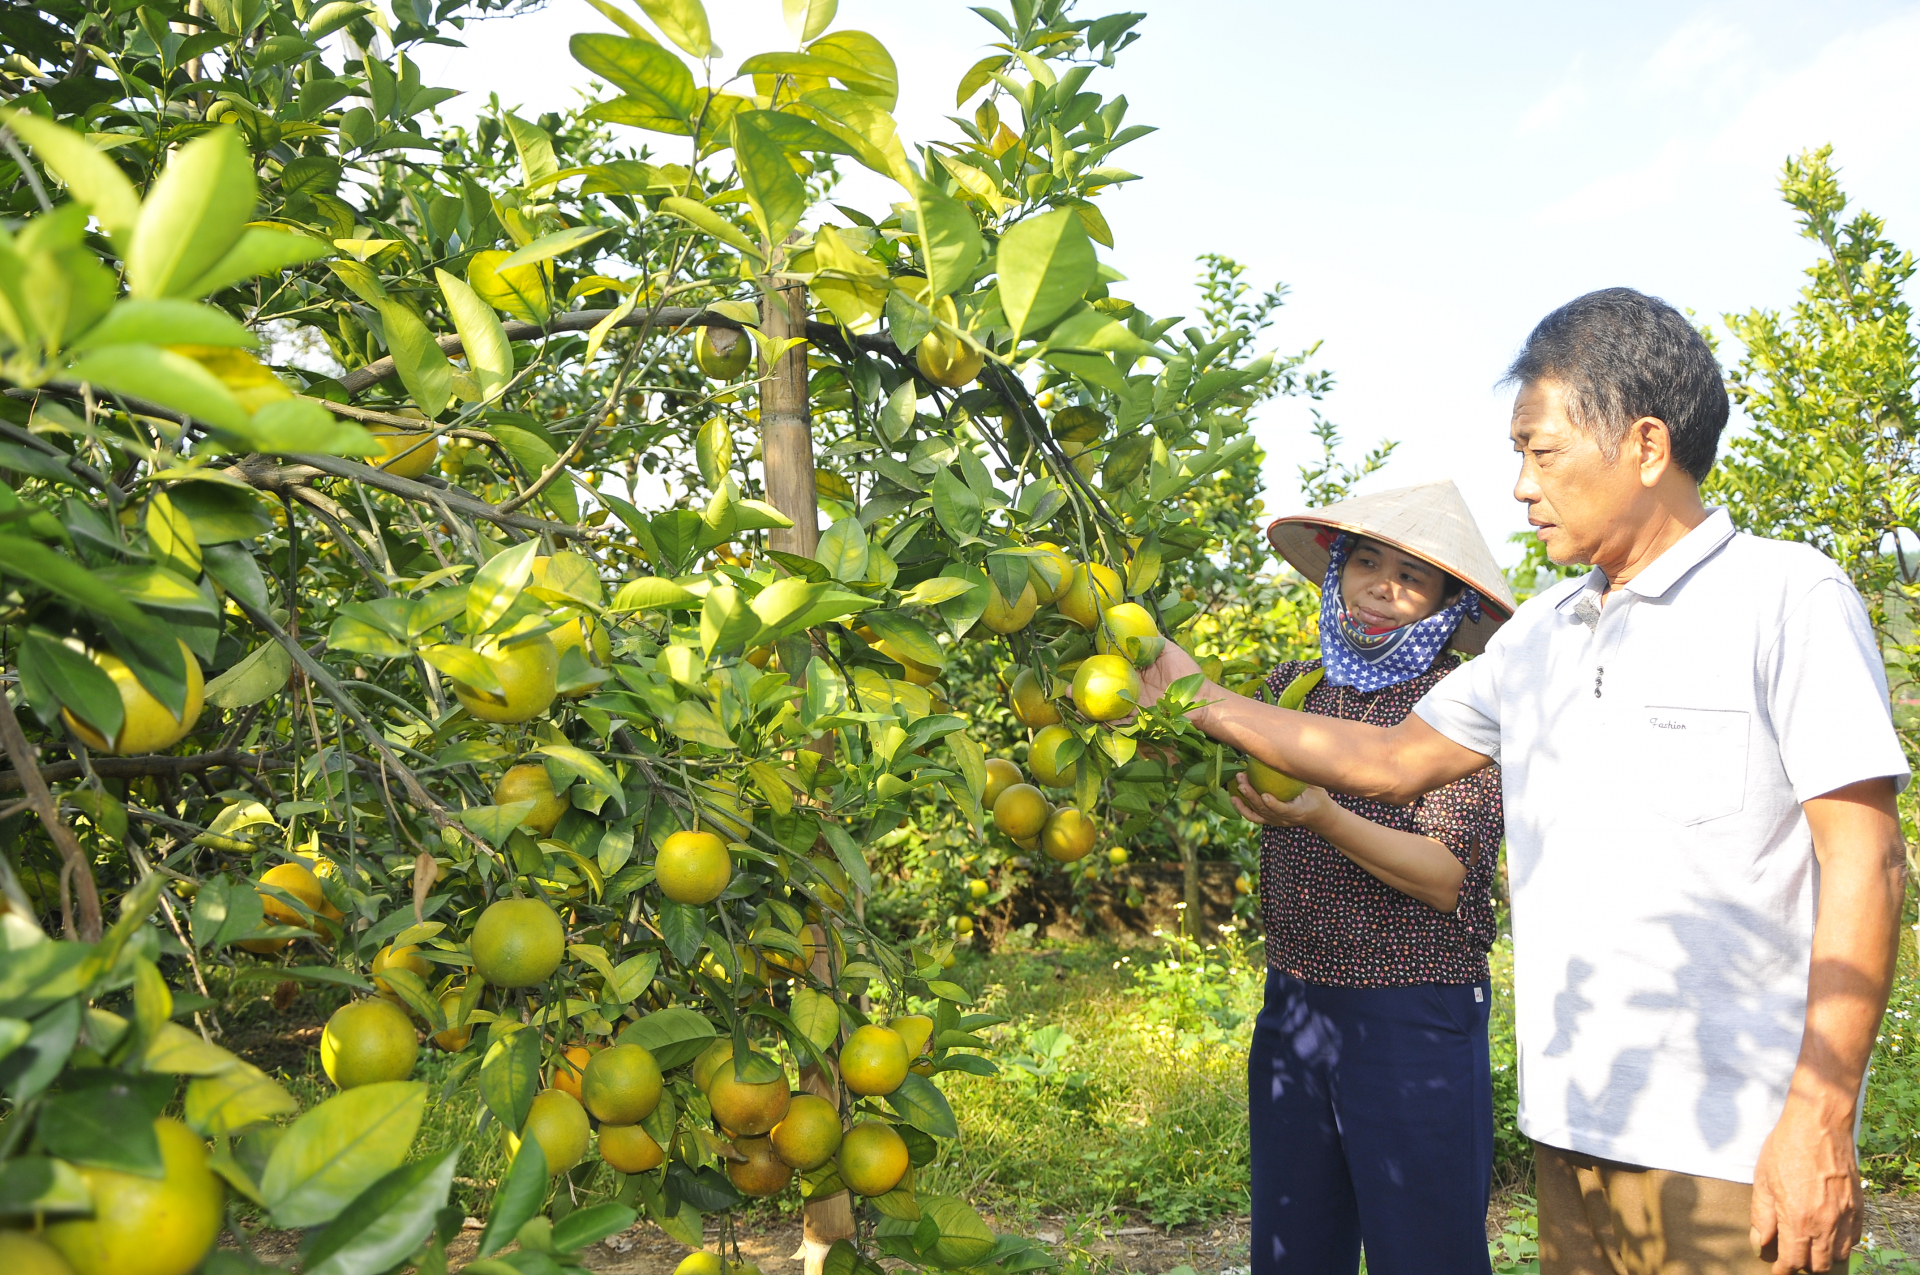 Ông Hoàng Quyết Thắng, xã Vĩnh Hảo (Bắc Quang) chăm sóc vườn cam Vàng chuẩn bị thu hoạch. 				Ảnh: KIM TIẾN